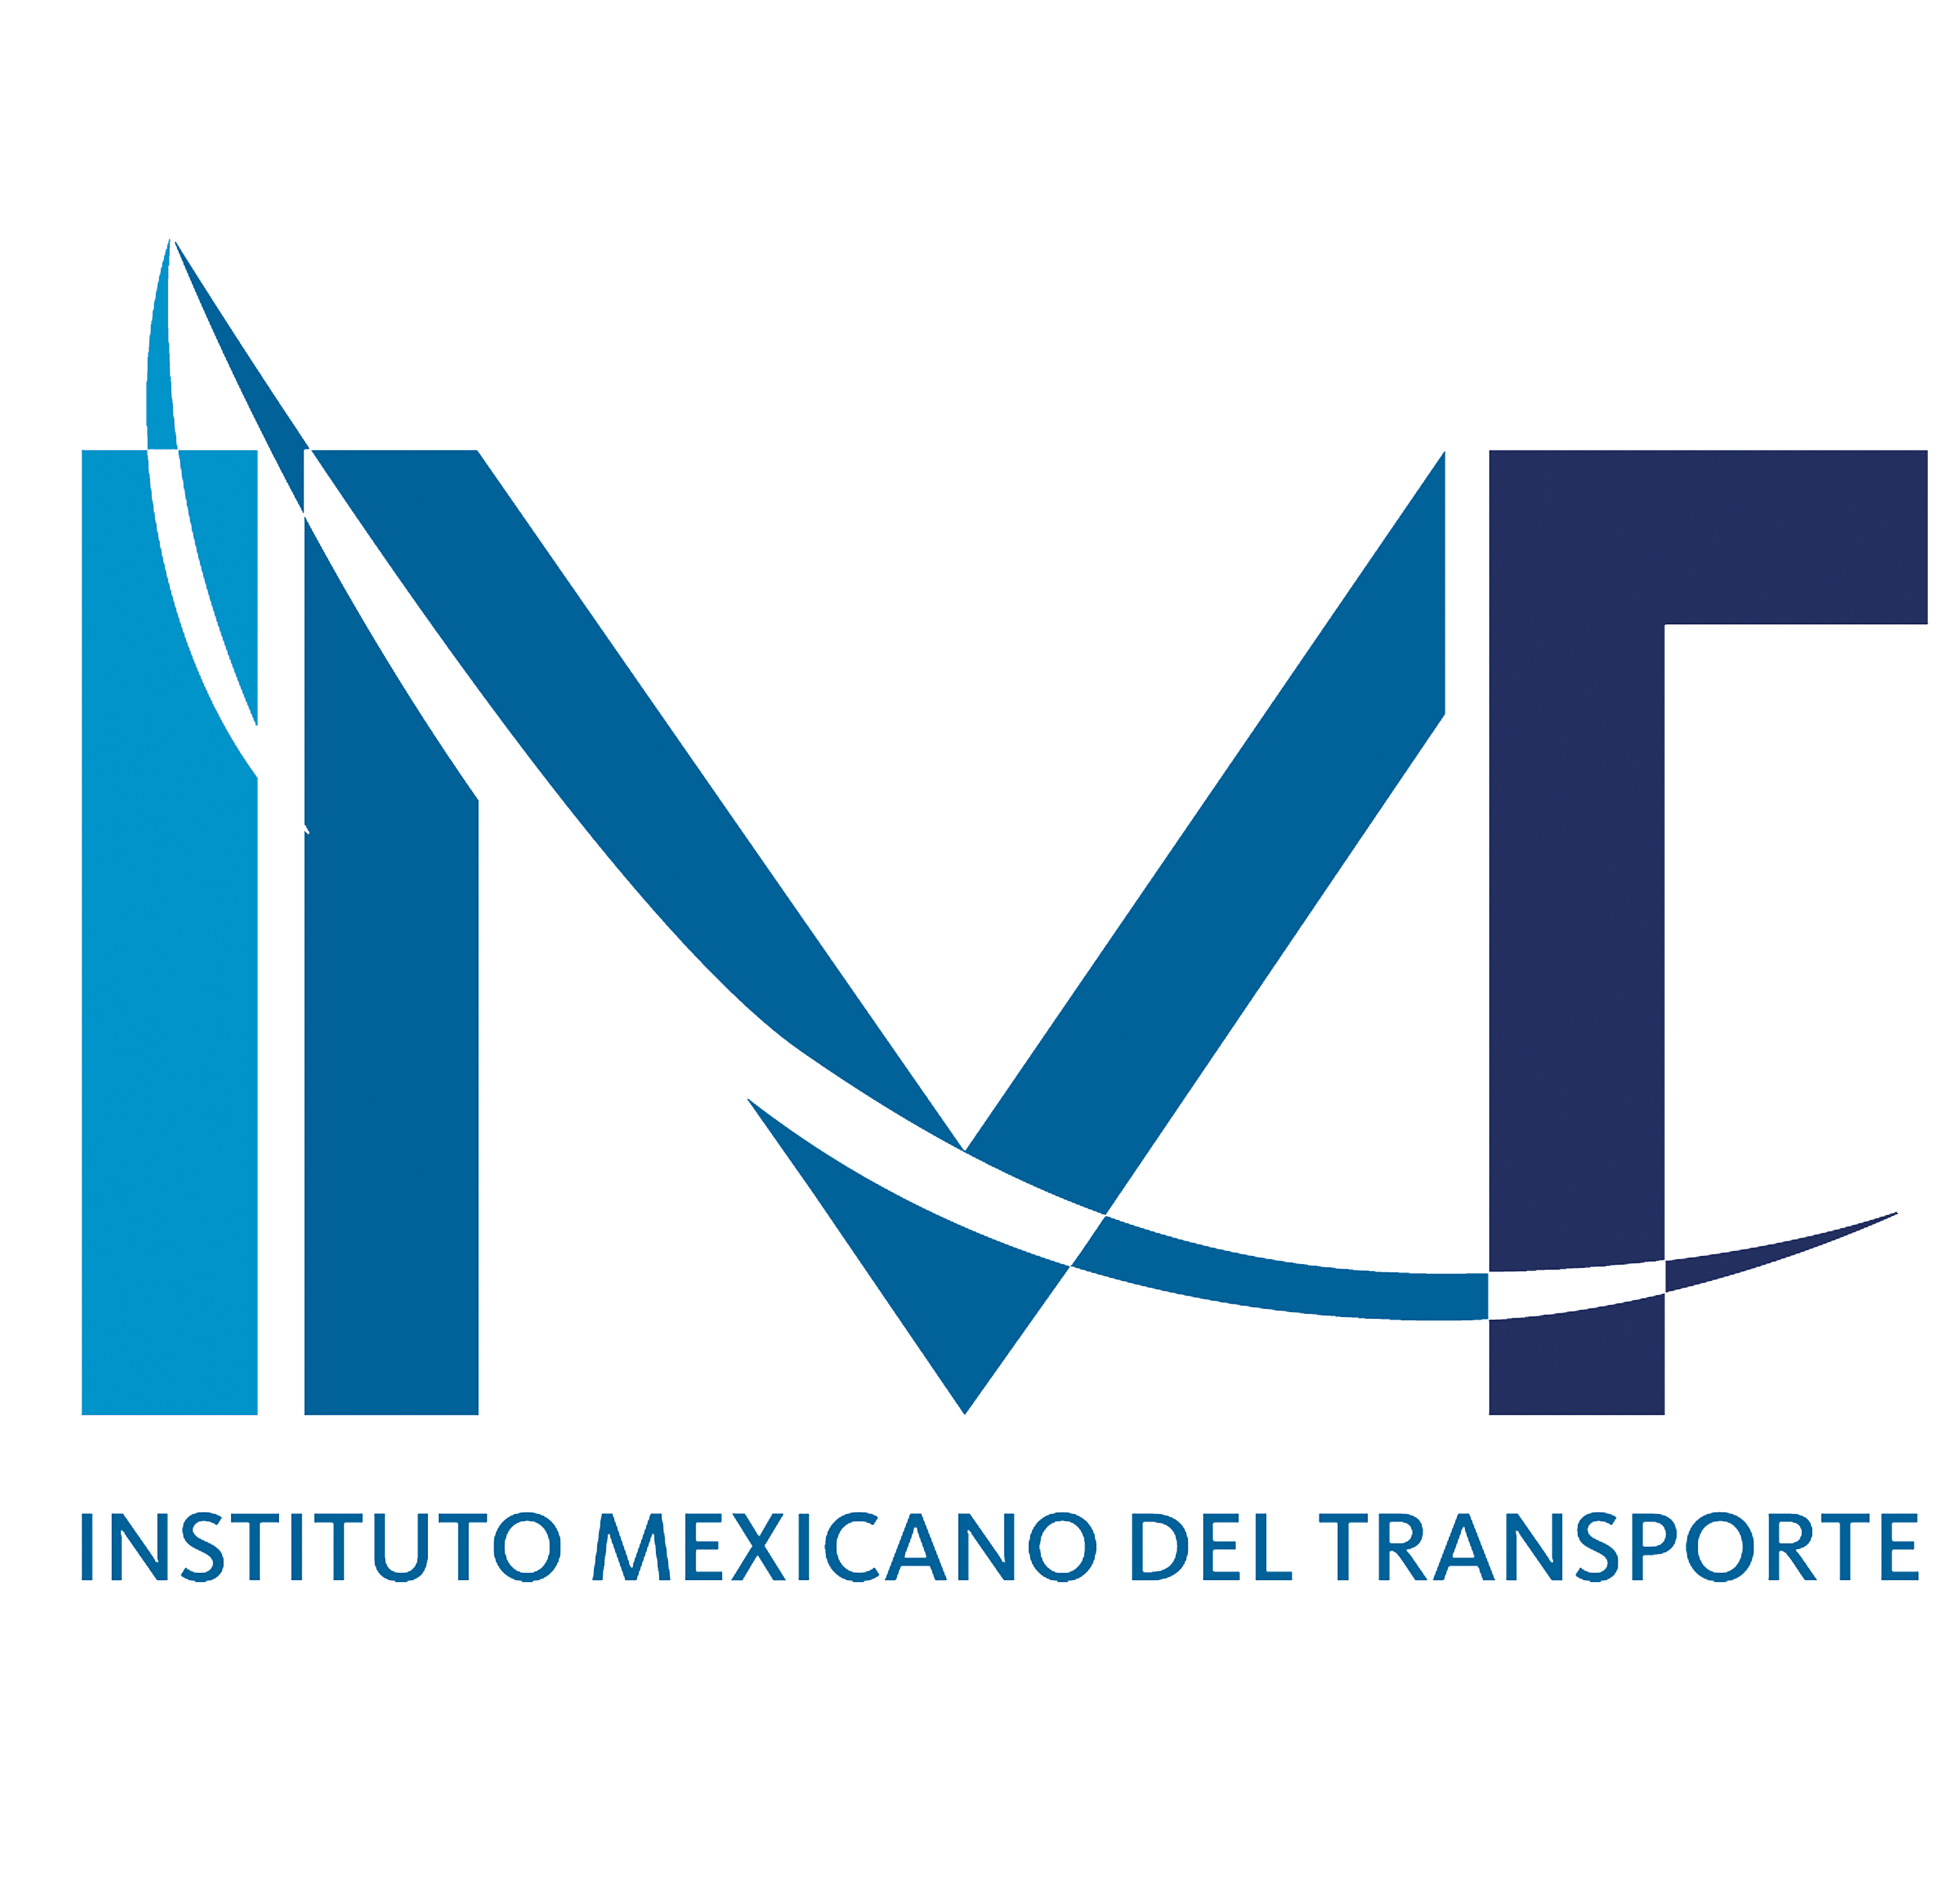 Instituto Mexciano del Transporte